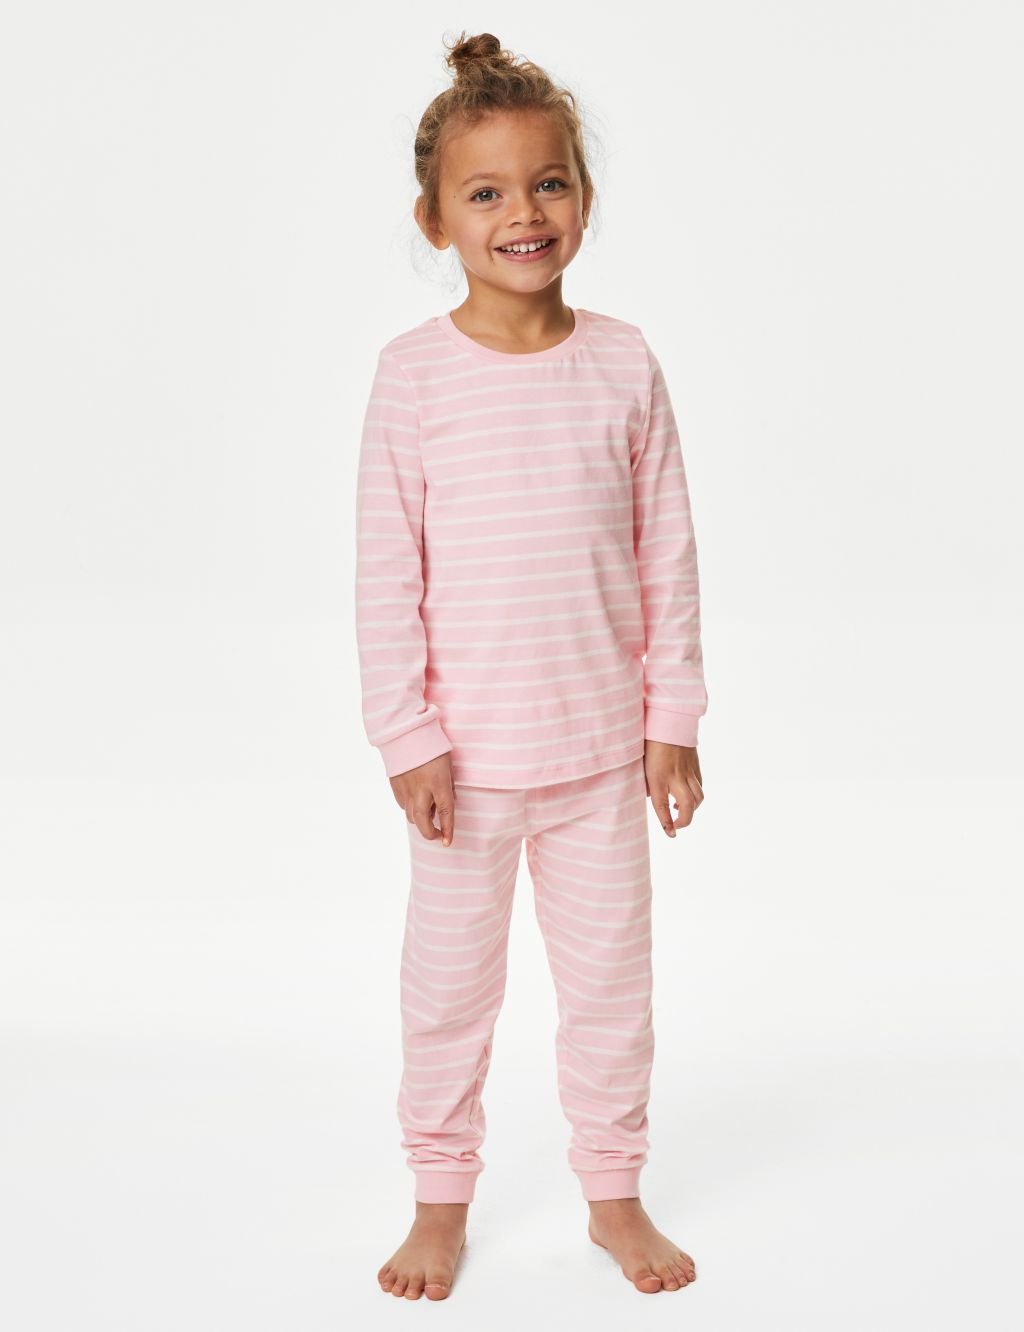 Pure Cotton Striped Pyjamas (1-8 Yrs)